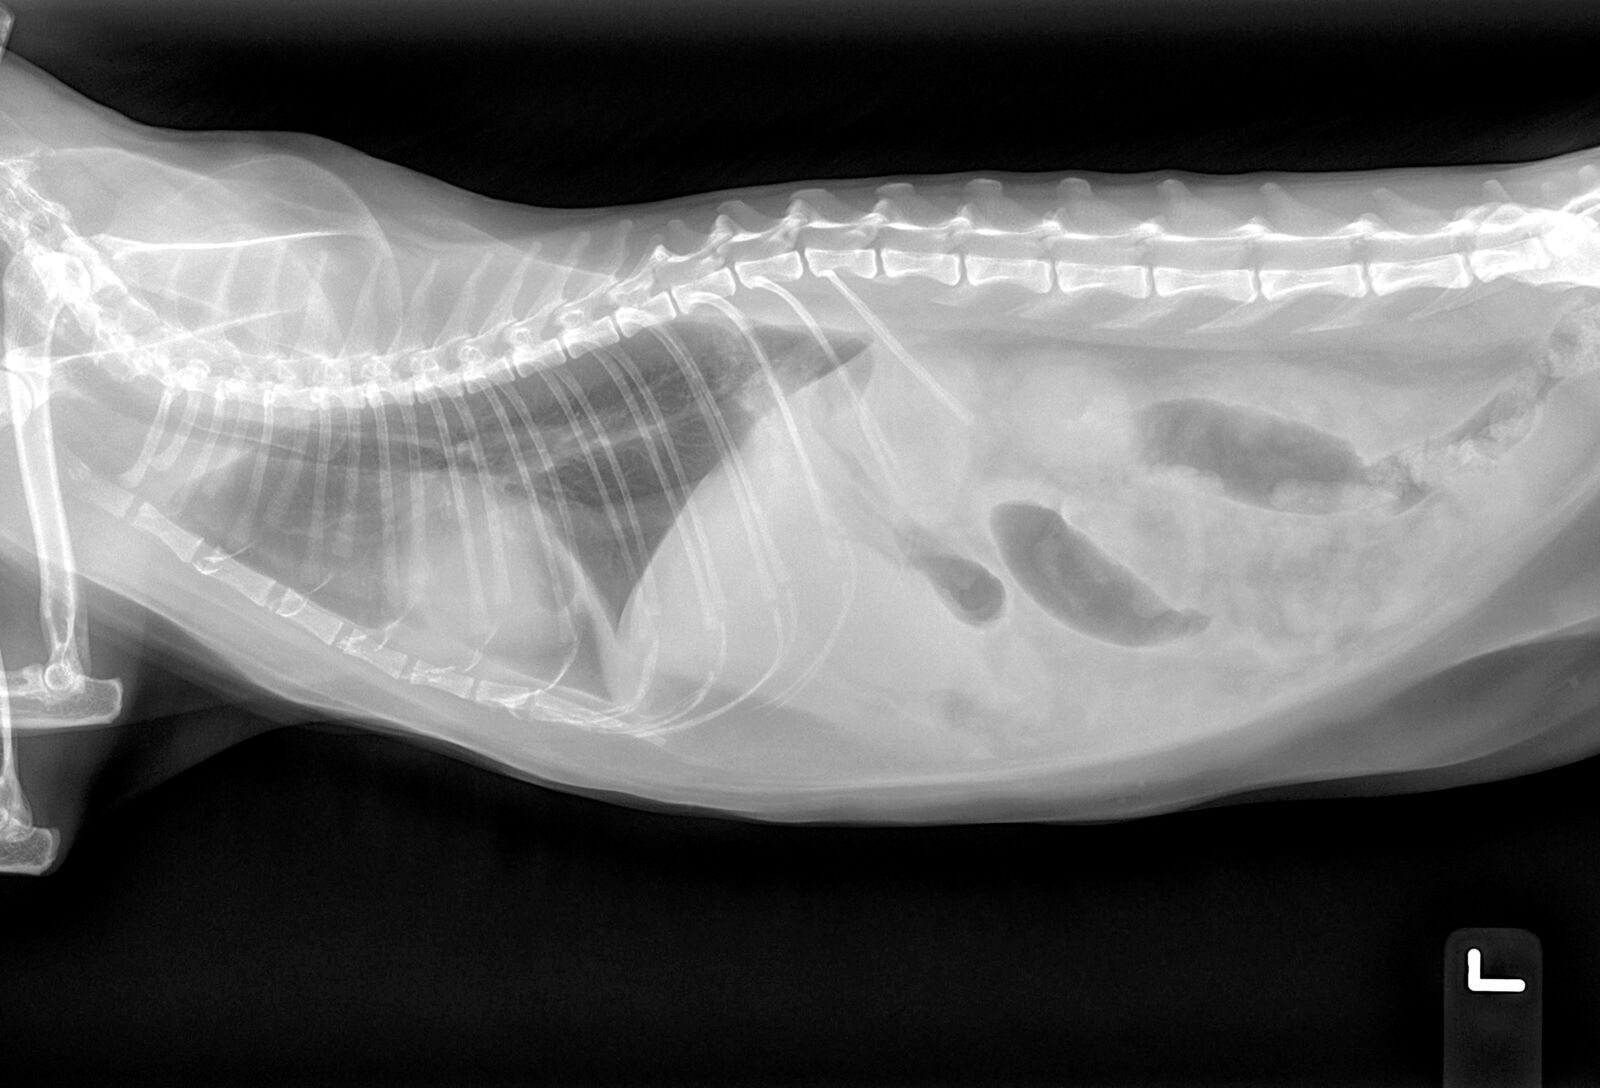 Radiografía lateral de un gato en la que se observa una pérdida del detalle de la serosa en la cavidad abdominal. No se aprecia derrame pleural ni una cardiomegalia o hepatomegalia evidentes.